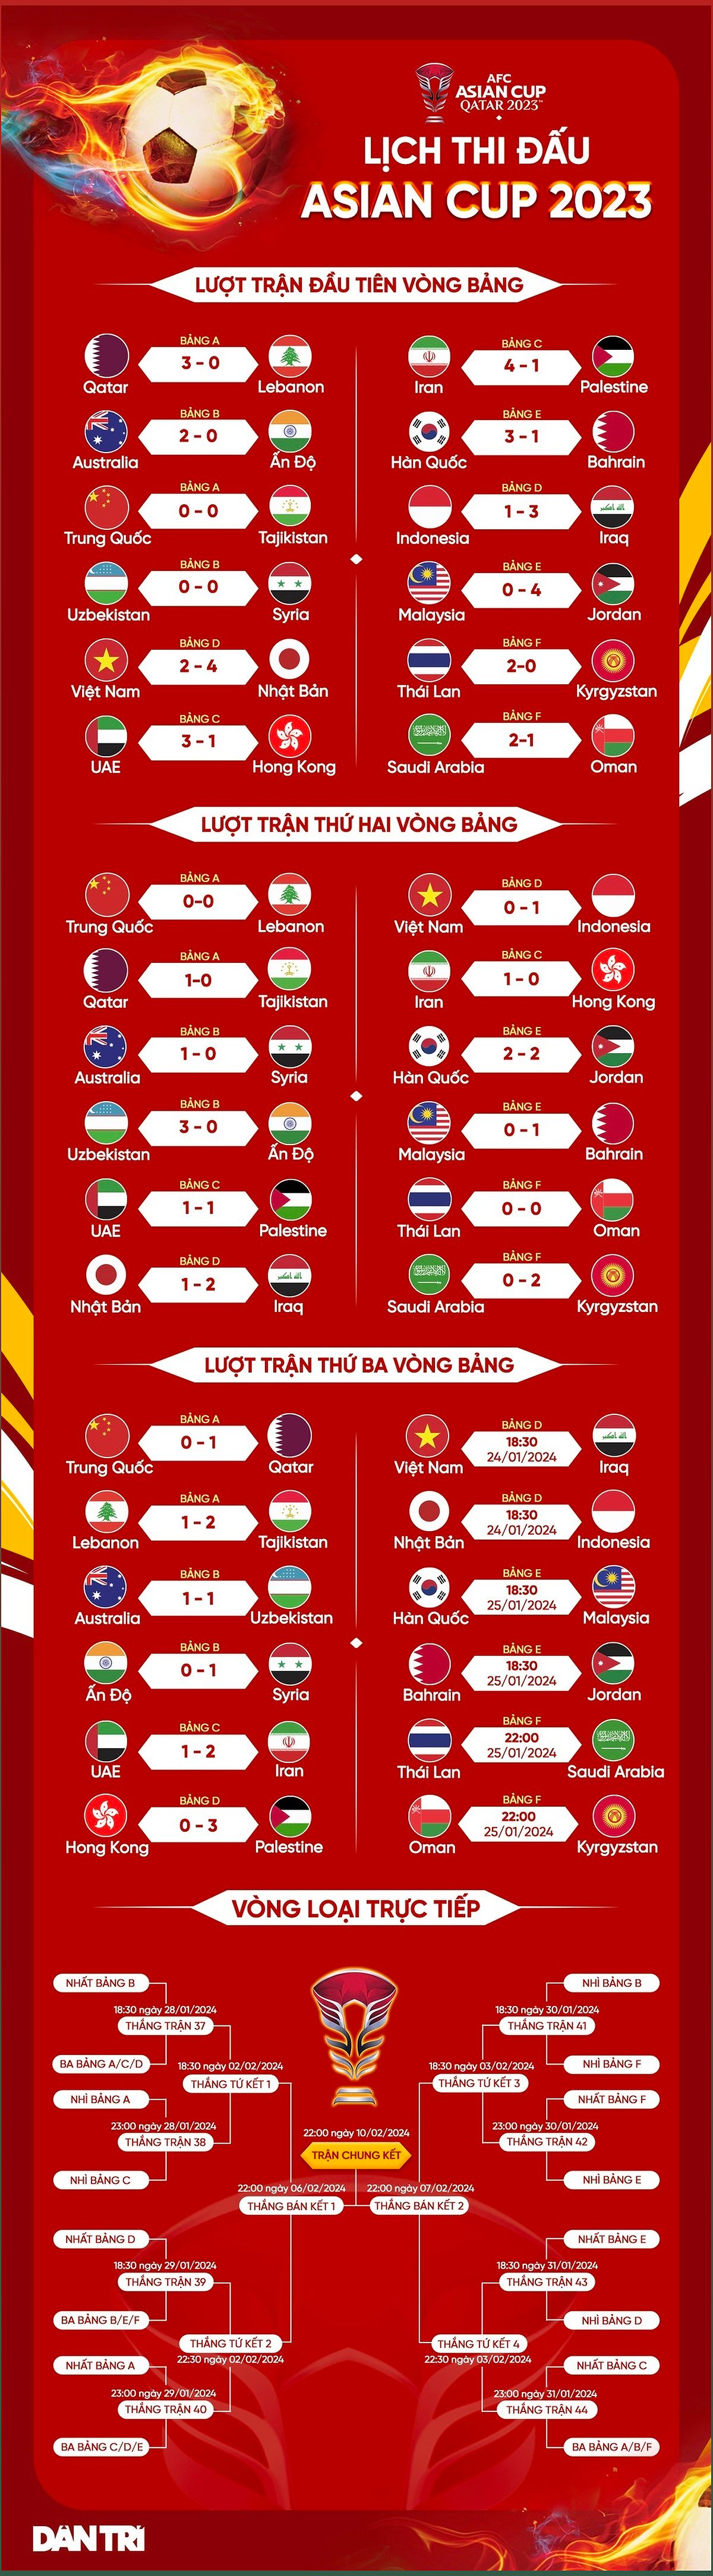 Đội tuyển Indonesia đối diện với thách thức lớn tại Asian Cup 2023 - -774486014